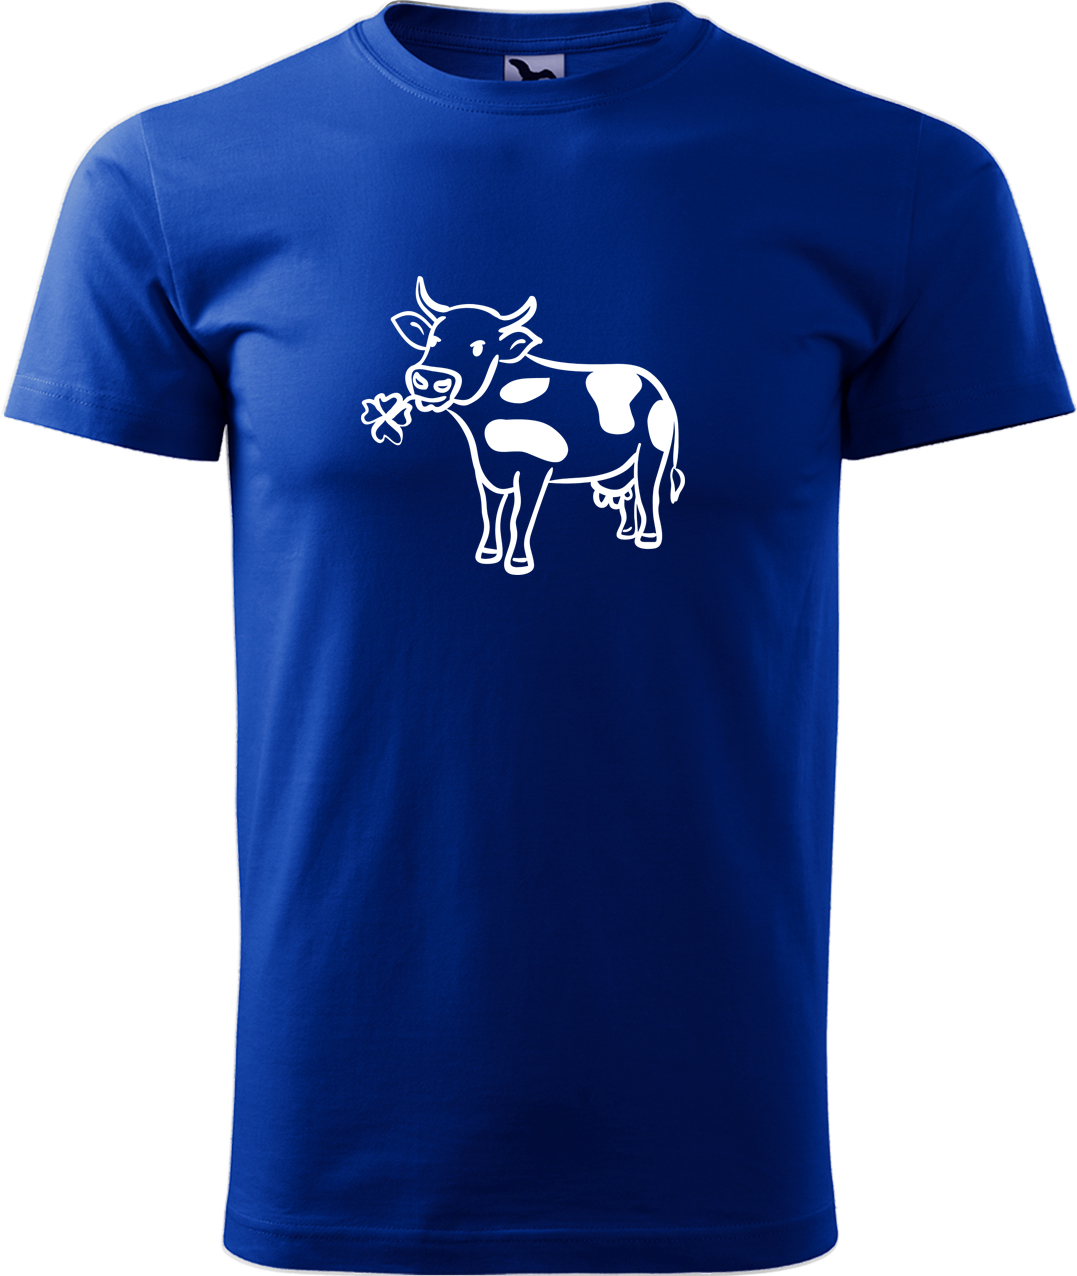 Pánské tričko s krávou - Kravička a jetel Velikost: XL, Barva: Královská modrá (05), Střih: pánský